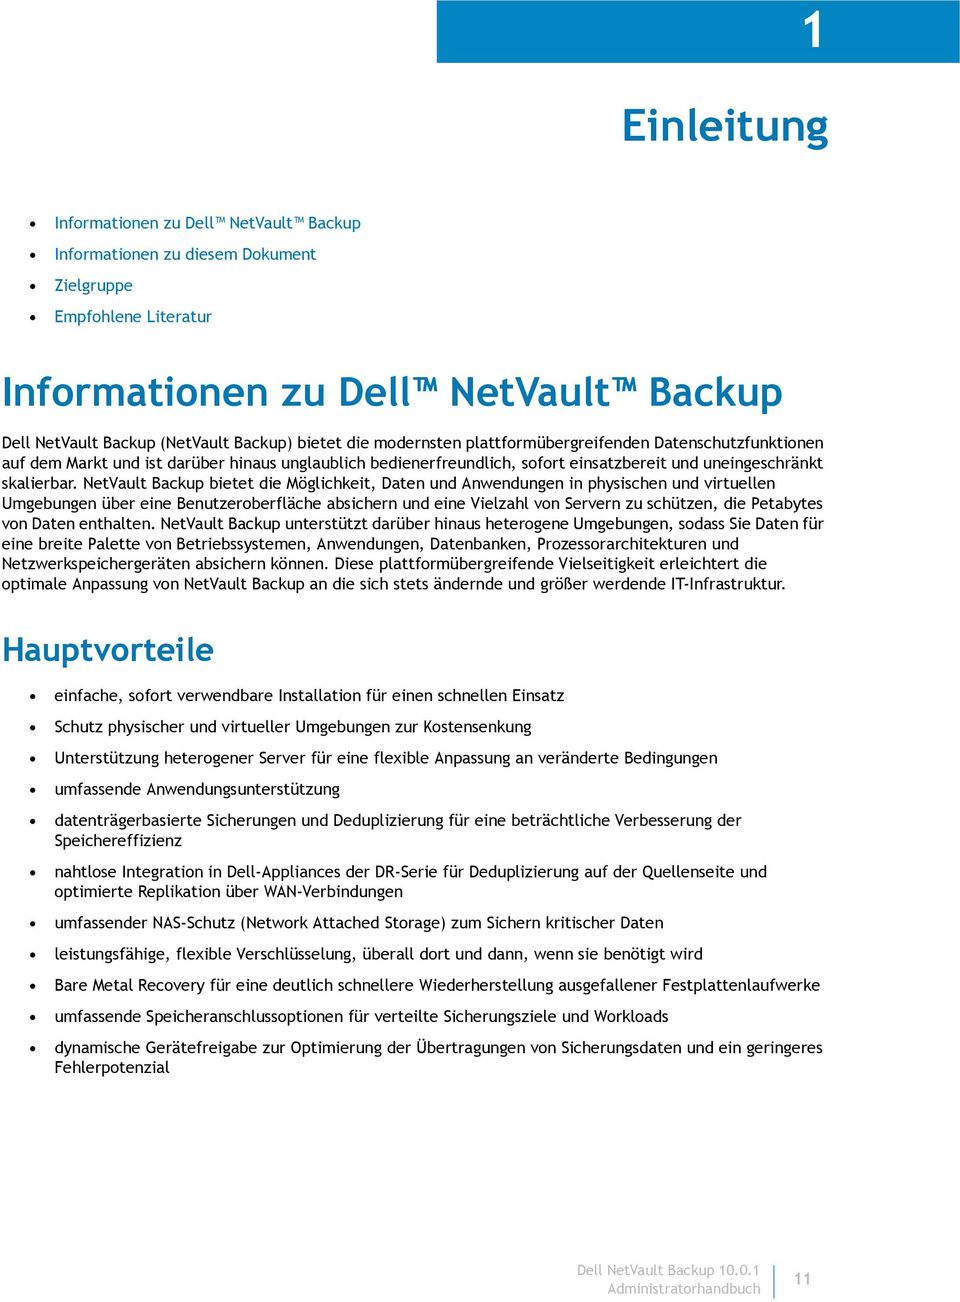 NetVault Backup bietet die Möglichkeit, Daten und Anwendungen in physischen und virtuellen Umgebungen über eine Benutzeroberfläche absichern und eine Vielzahl von Servern zu schützen, die Petabytes